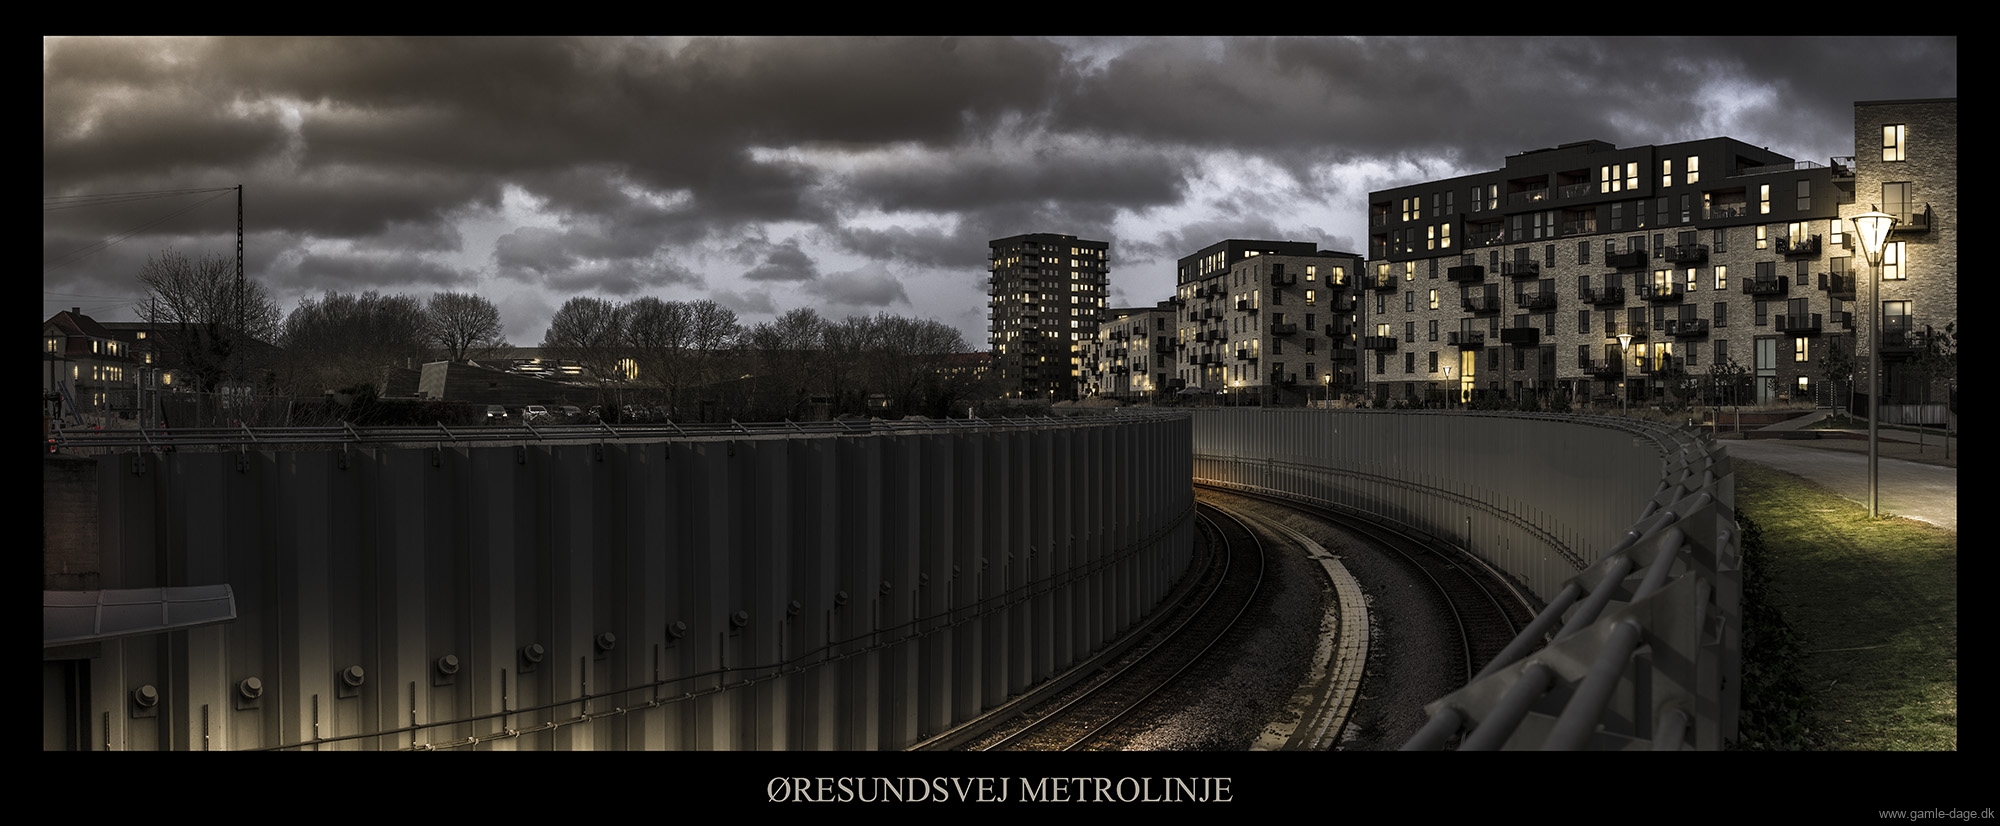 Øresundsvej metro